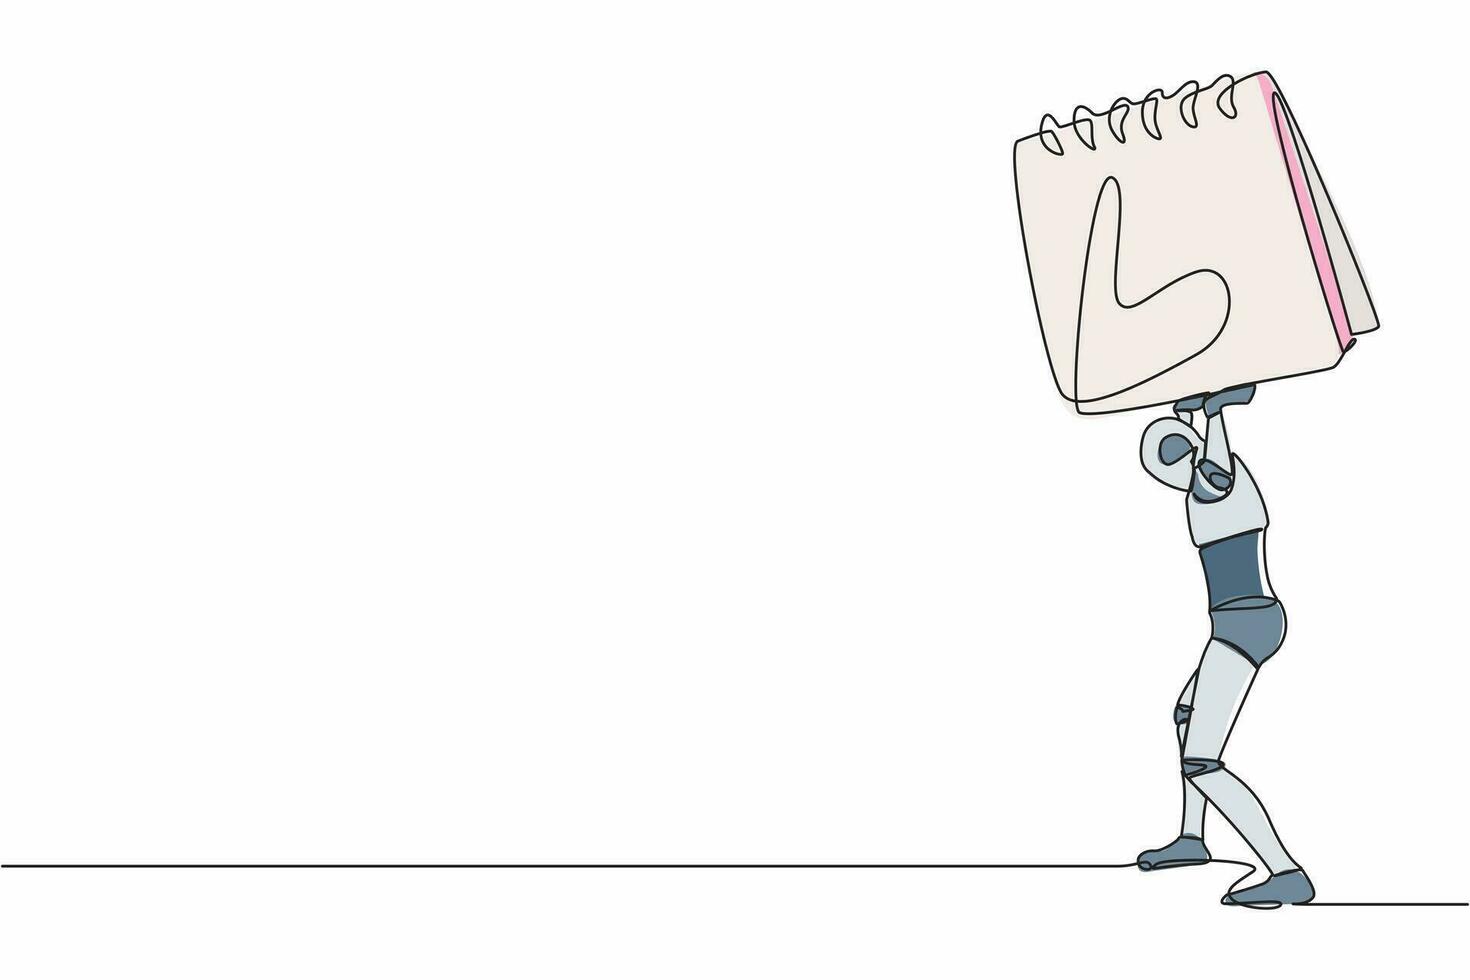 soltero uno línea dibujo cansado robot que lleva pesado calendario en su atrás. cyborg con trabajo problema y fecha límite. humanoide robot cibernético organismo. continuo línea gráfico diseño vector ilustración